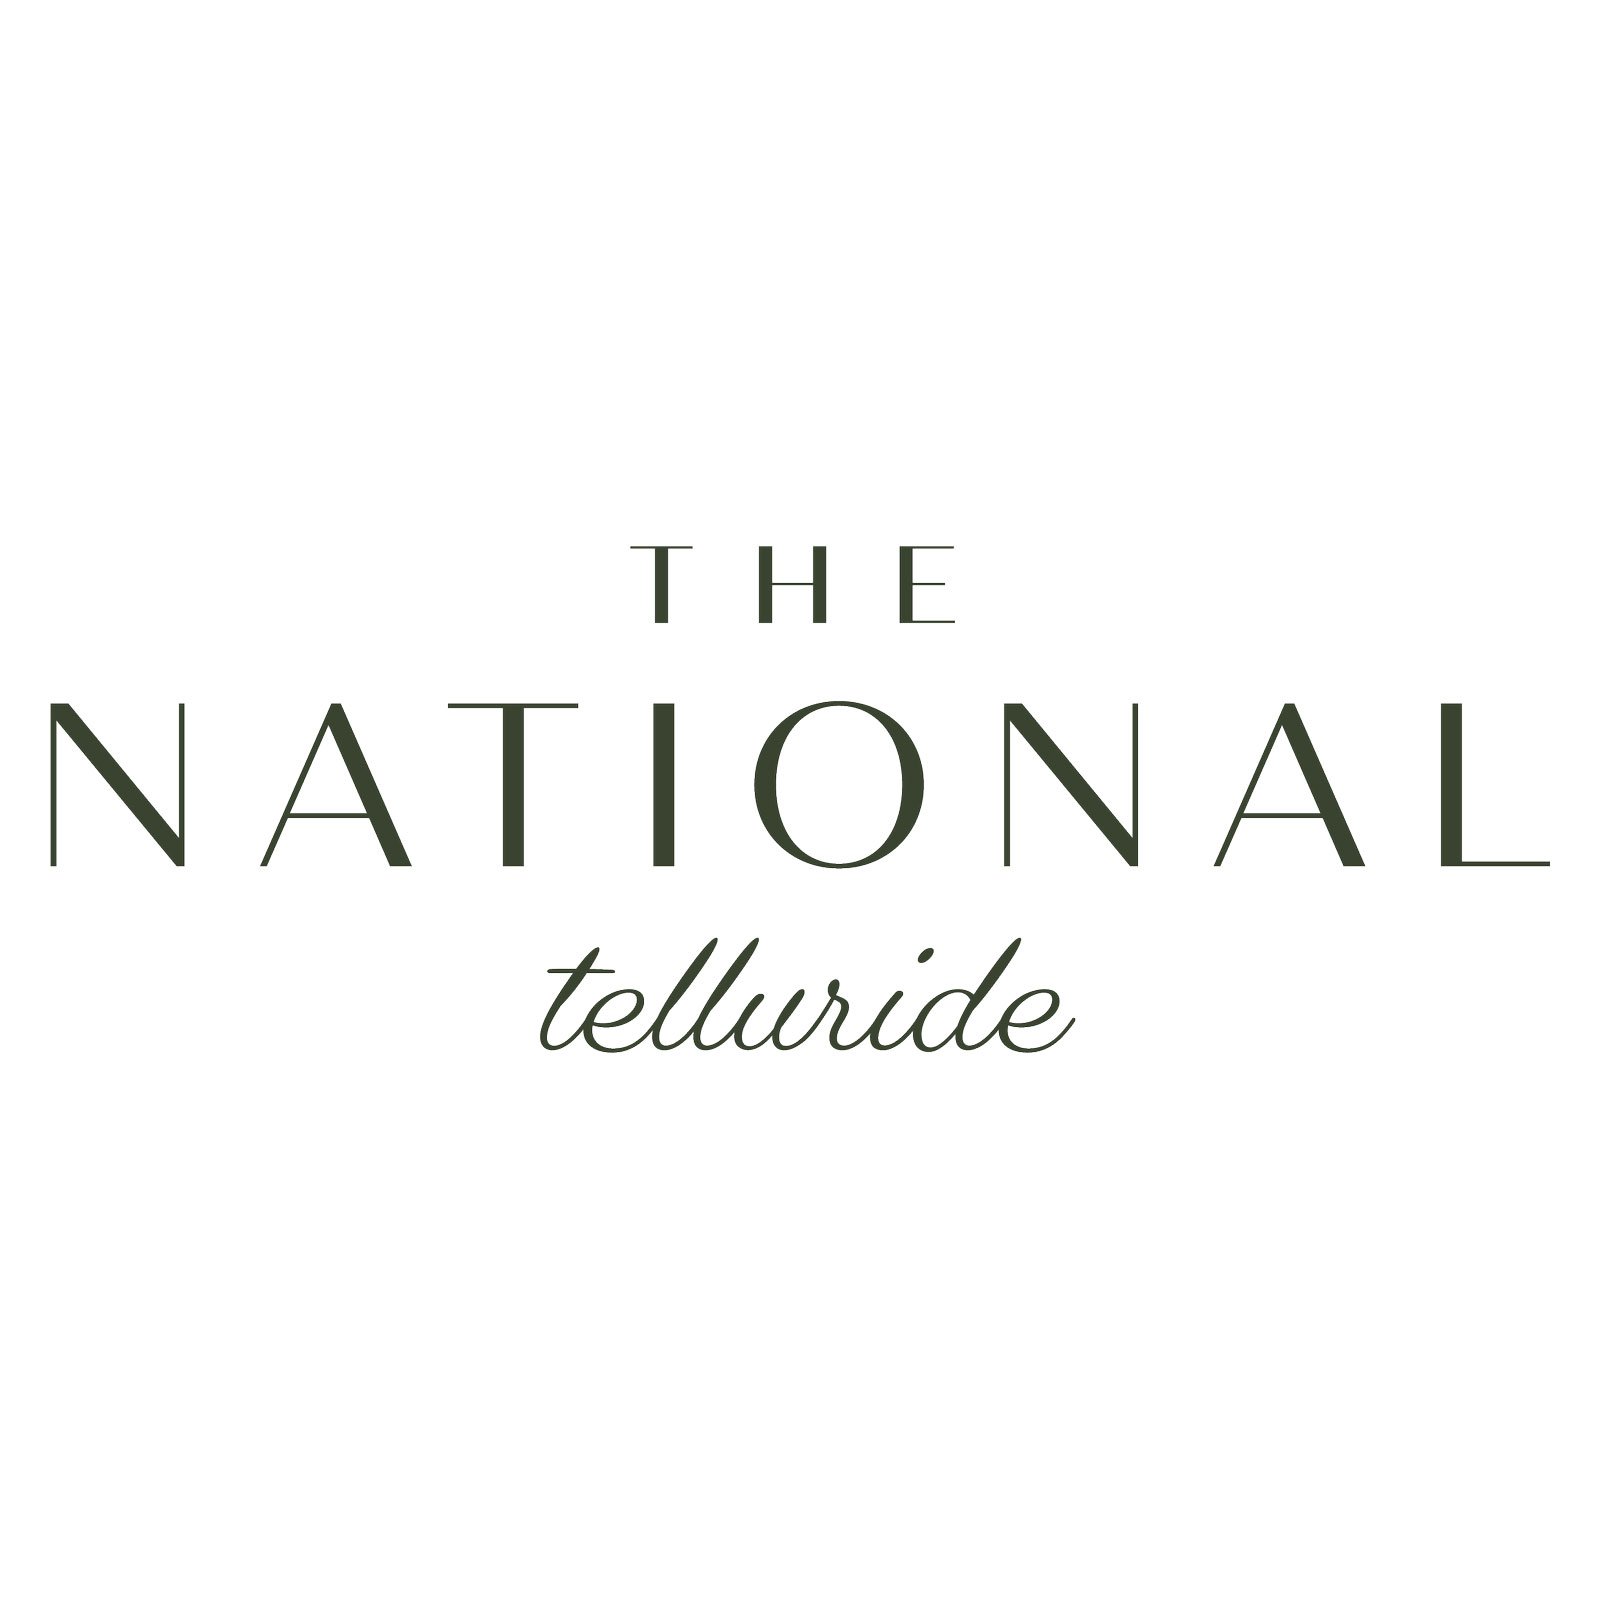 national-logo.jpg